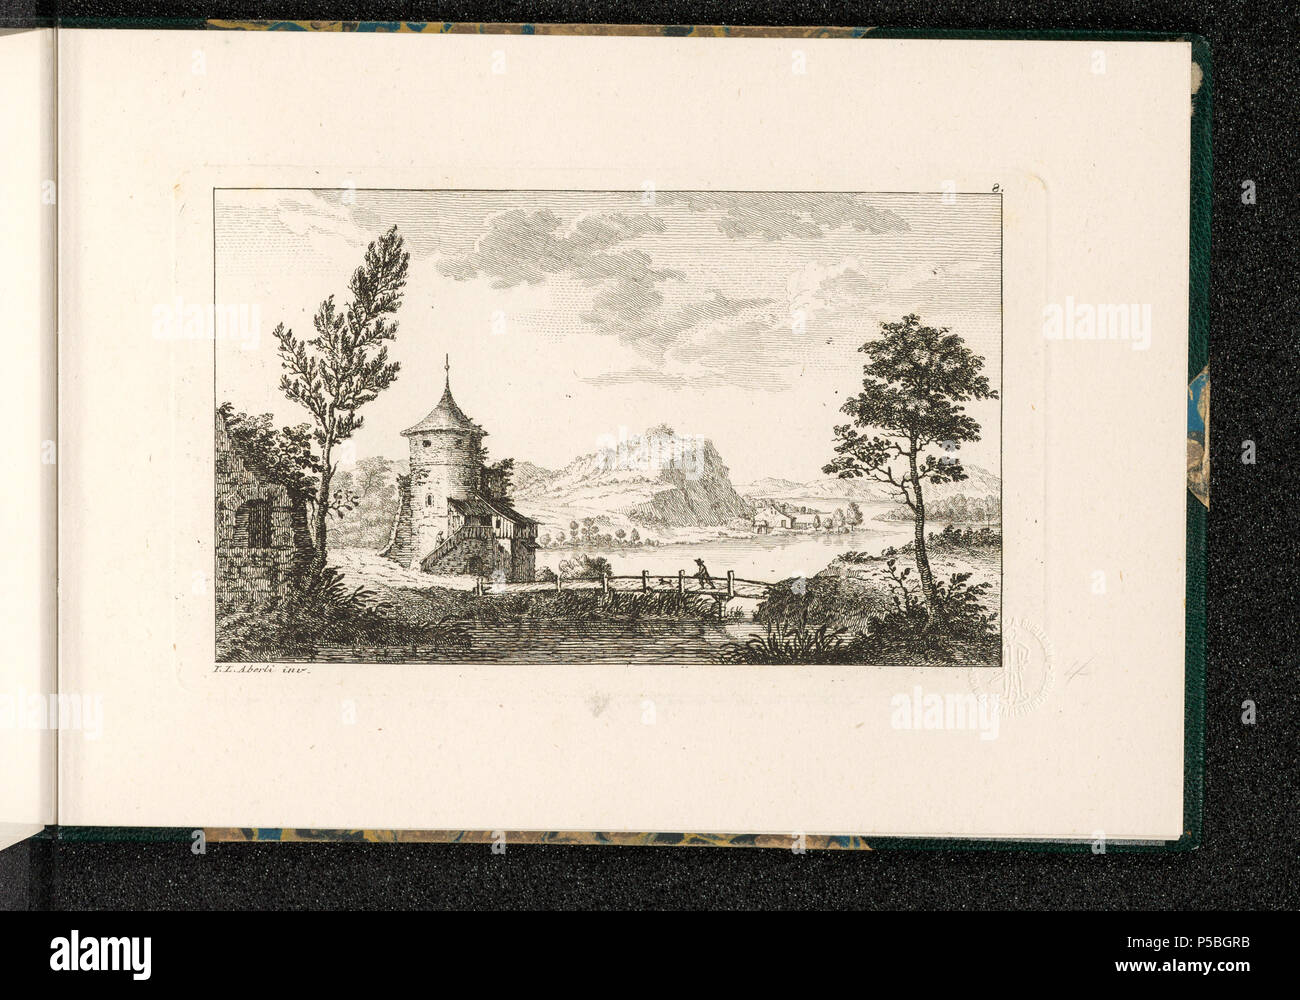 Prints and Drawings Department .  [Landschaft mit Turm]; 12. Landschäftlein inv. von J. L. Aberli (Blatt 8); [recto oben rechts]: 8. [unten links]: I.L. Aberli inv.[recto unten rechts mit Bleistift bezeichnet]: 4; Ideallandschaft. Brücke; Turm; Ruine; See . 1765.  Aberli, Johann Ludwig [MalerIn/ZeichnerIn] [Aberli, Johann Ludwig] [StecherIn] [Zingg, Adrian] [StecherIn] 288 CH-NB - -Landschaft mit Turm- - Collection Gugelmann - GS-GUGE-4-19 Stock Photo